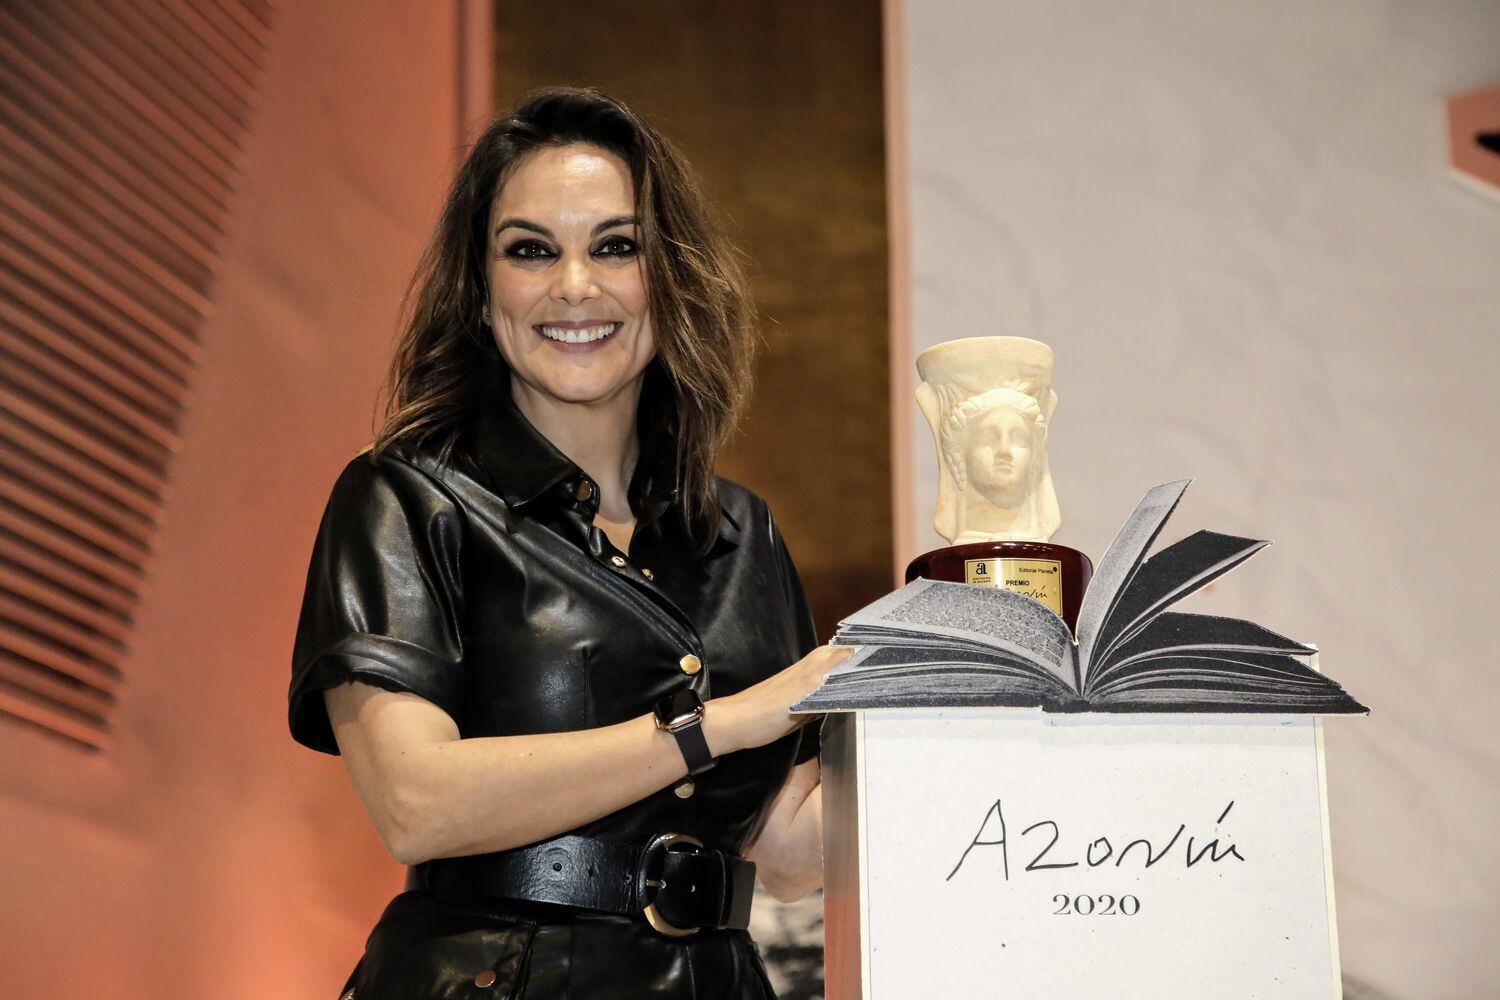 La periodista Mónica Carrillo posa con su galardón tras ganar el Premio Azorín 2020.